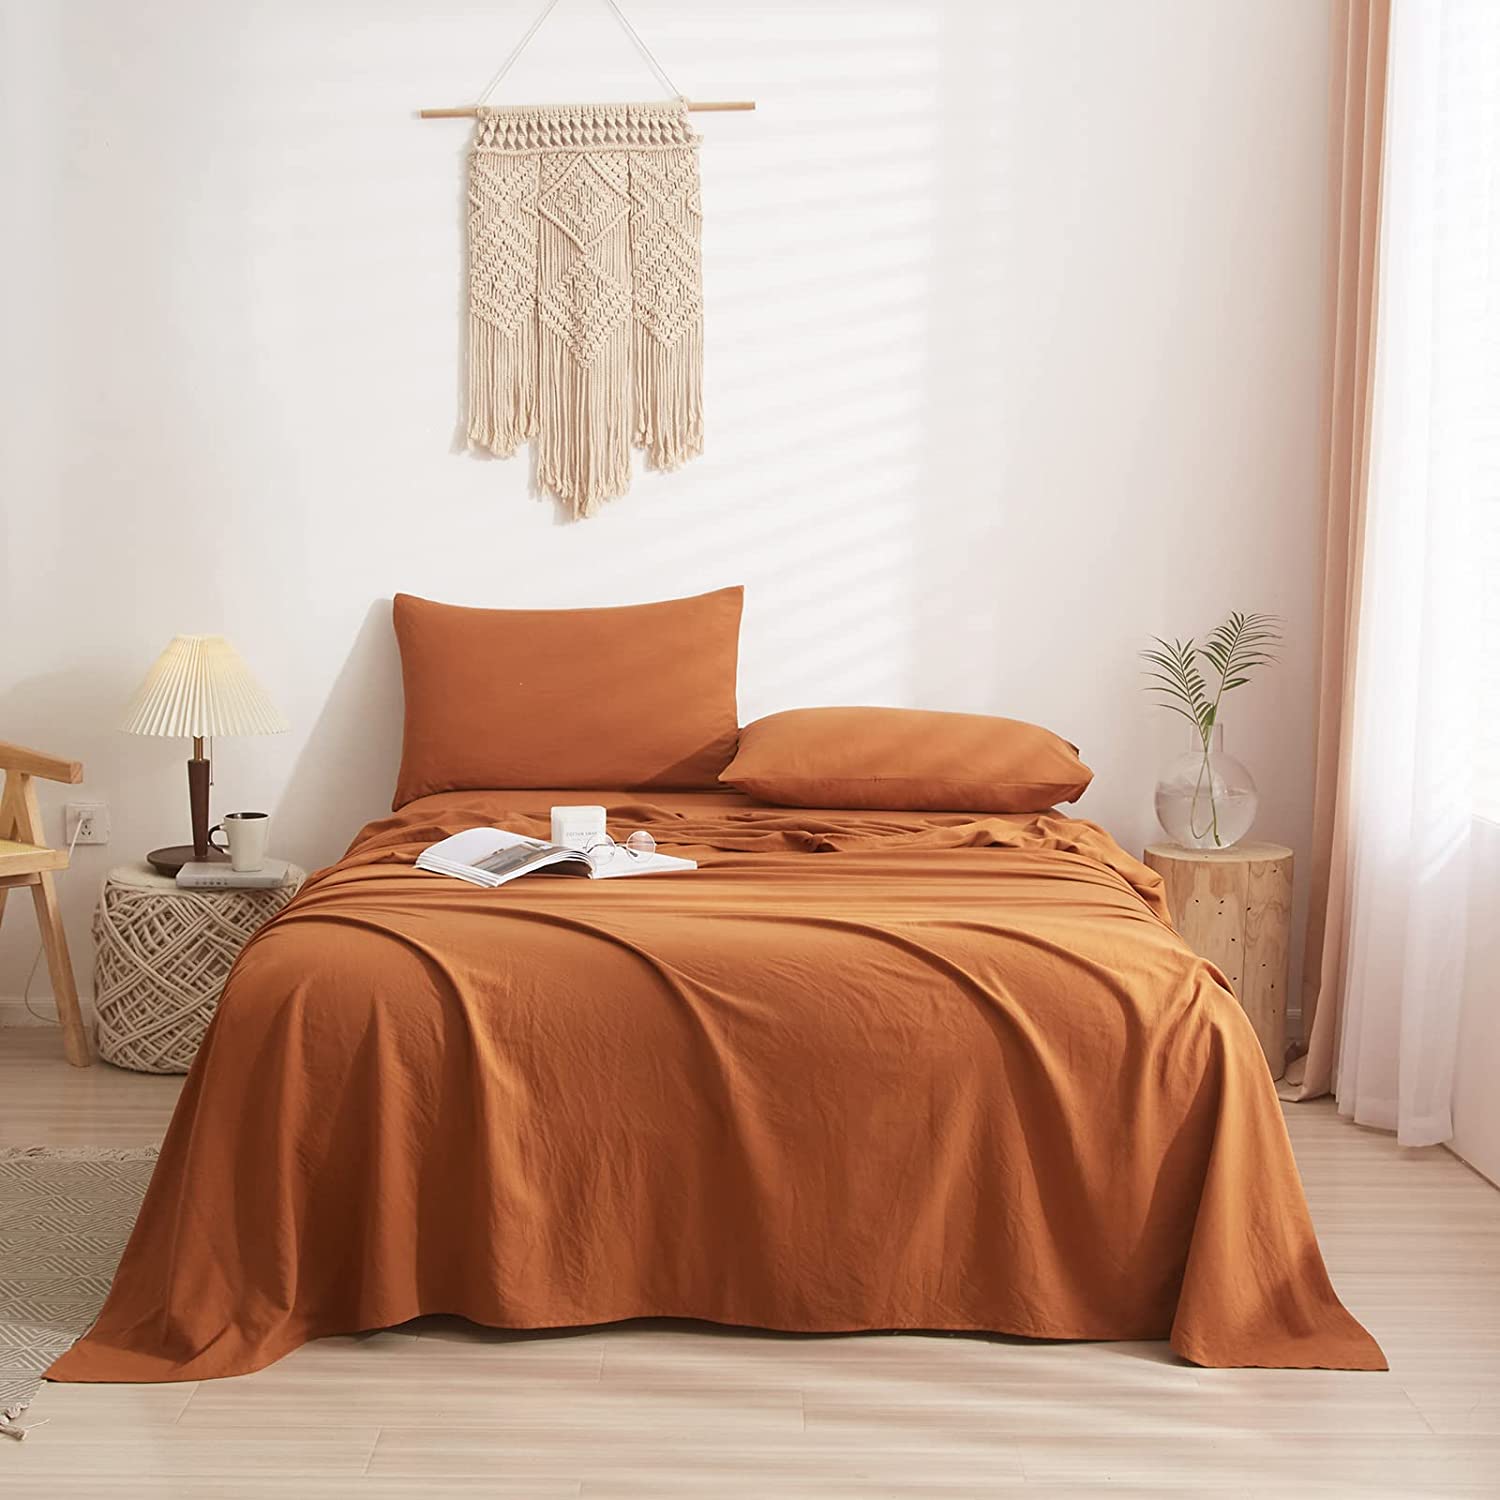 مجموعة أغطية السرير (غشاء سرير + غطاء + غشاء الوسادة)